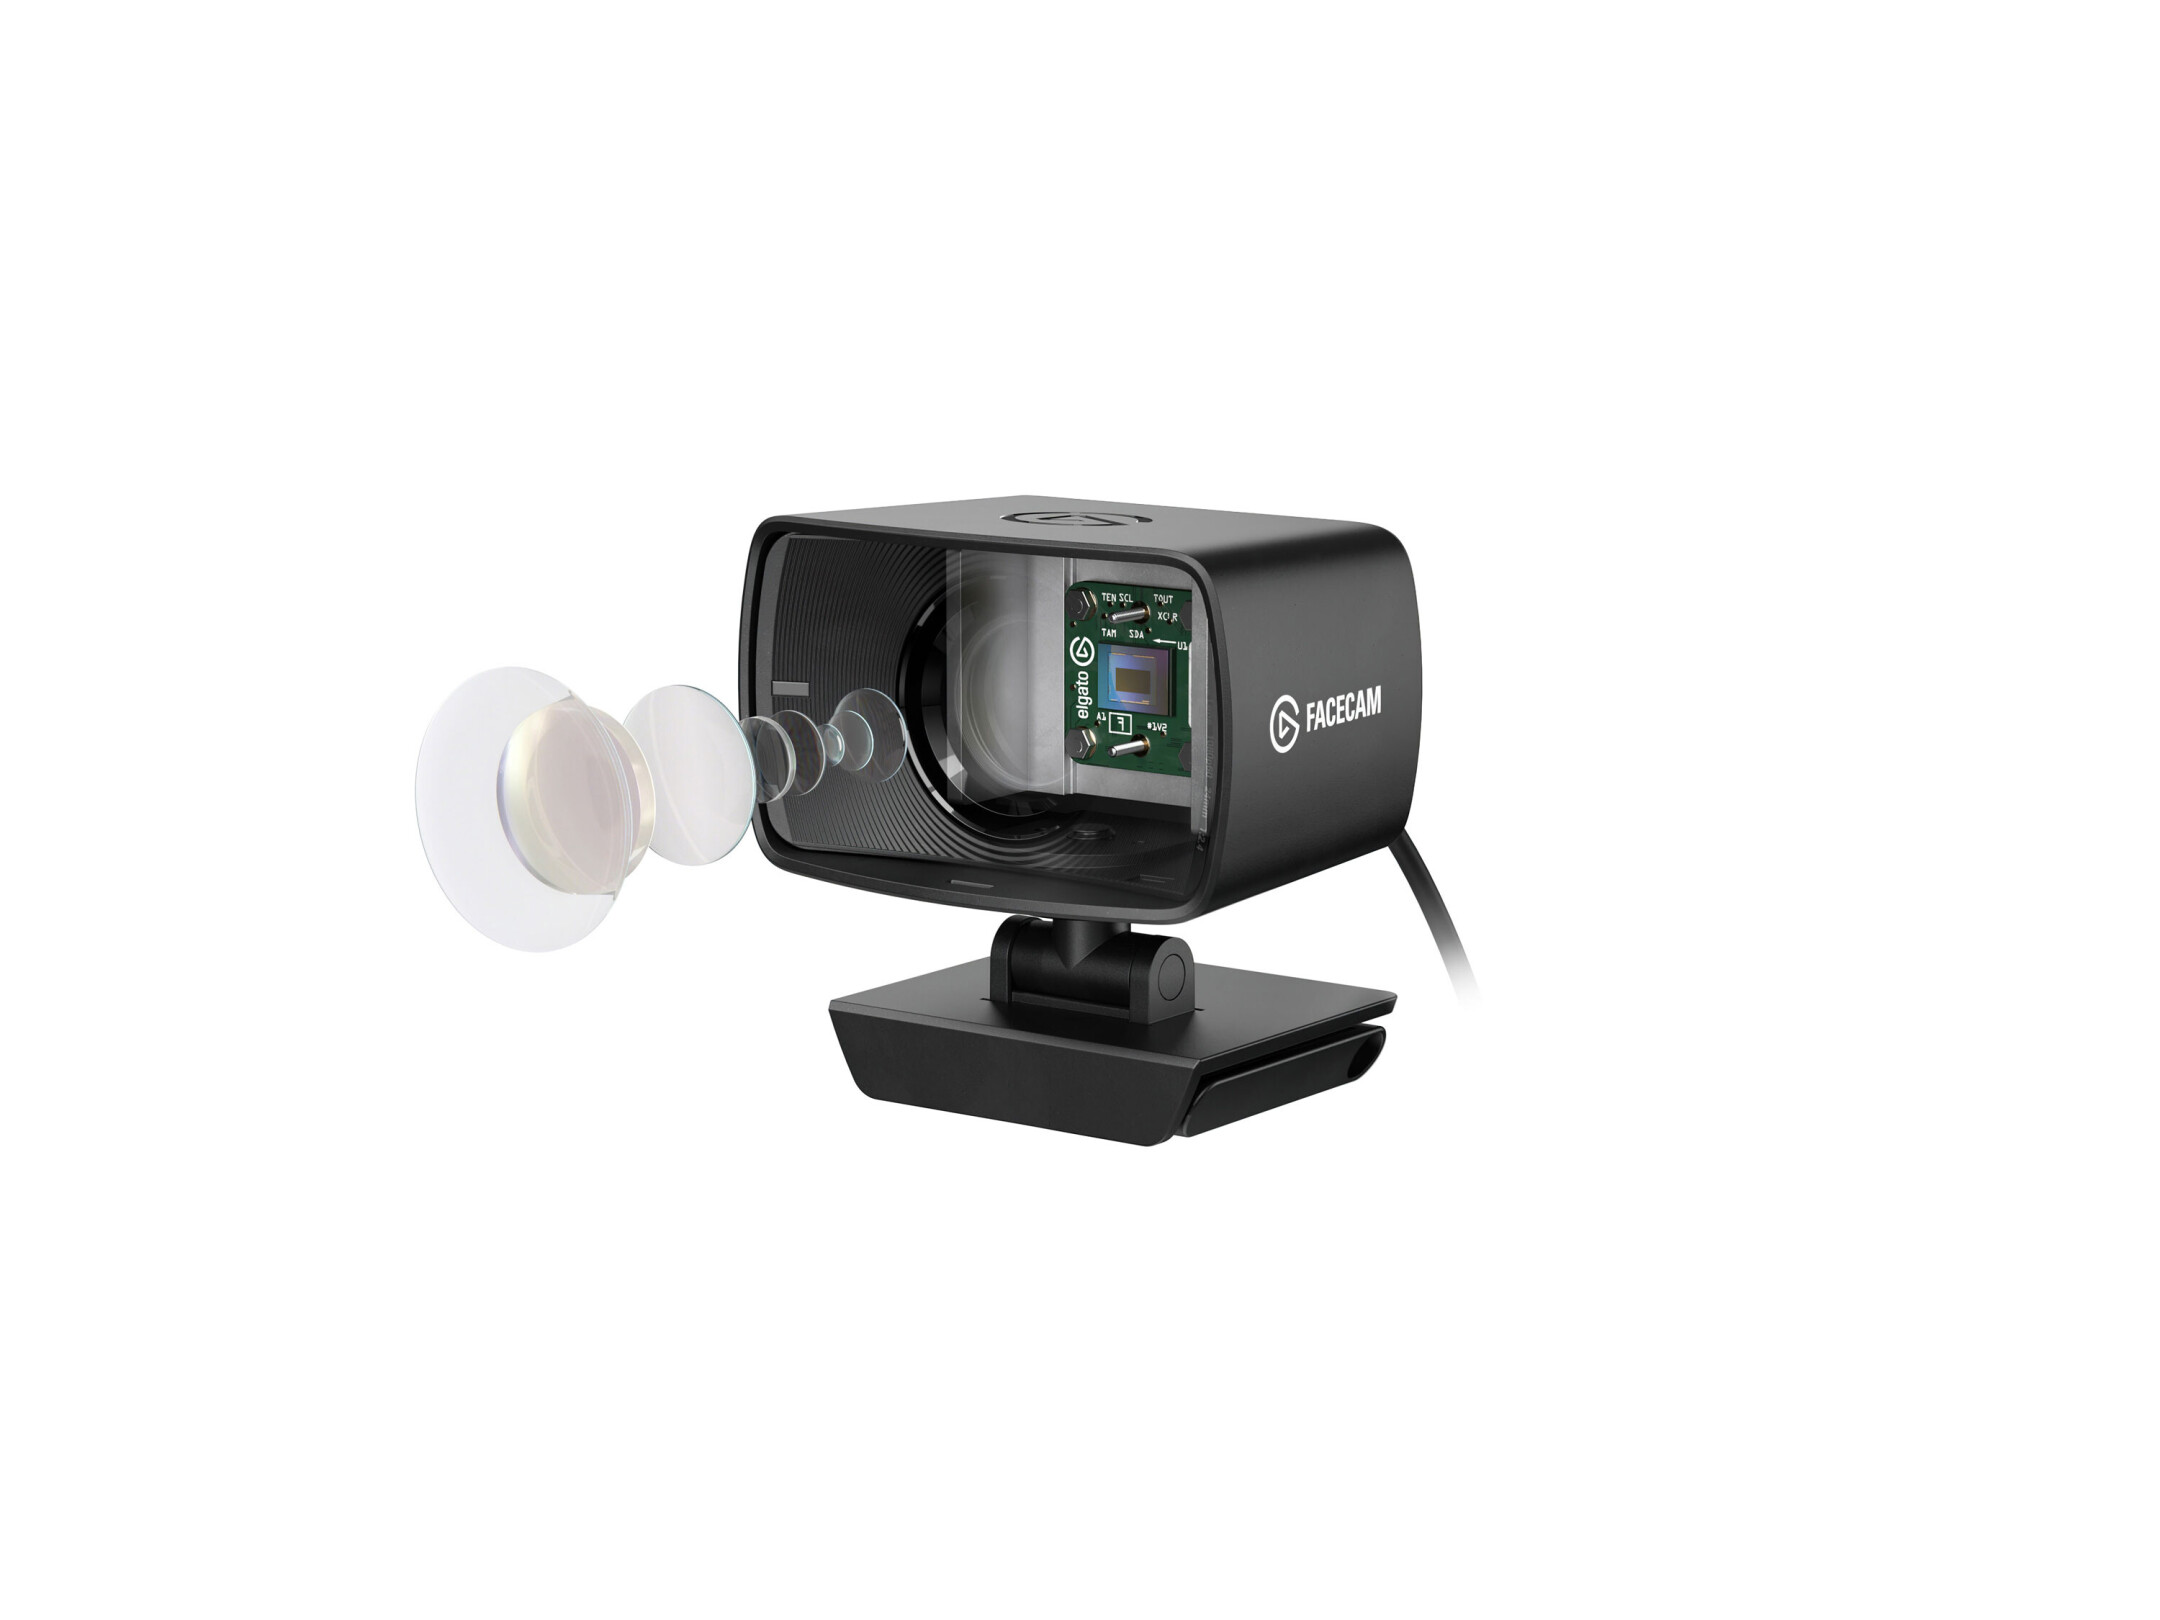 Elgato-Facecam-Premium-Full-HD-Webcam-1080p-30fps-Sichtfeld-82